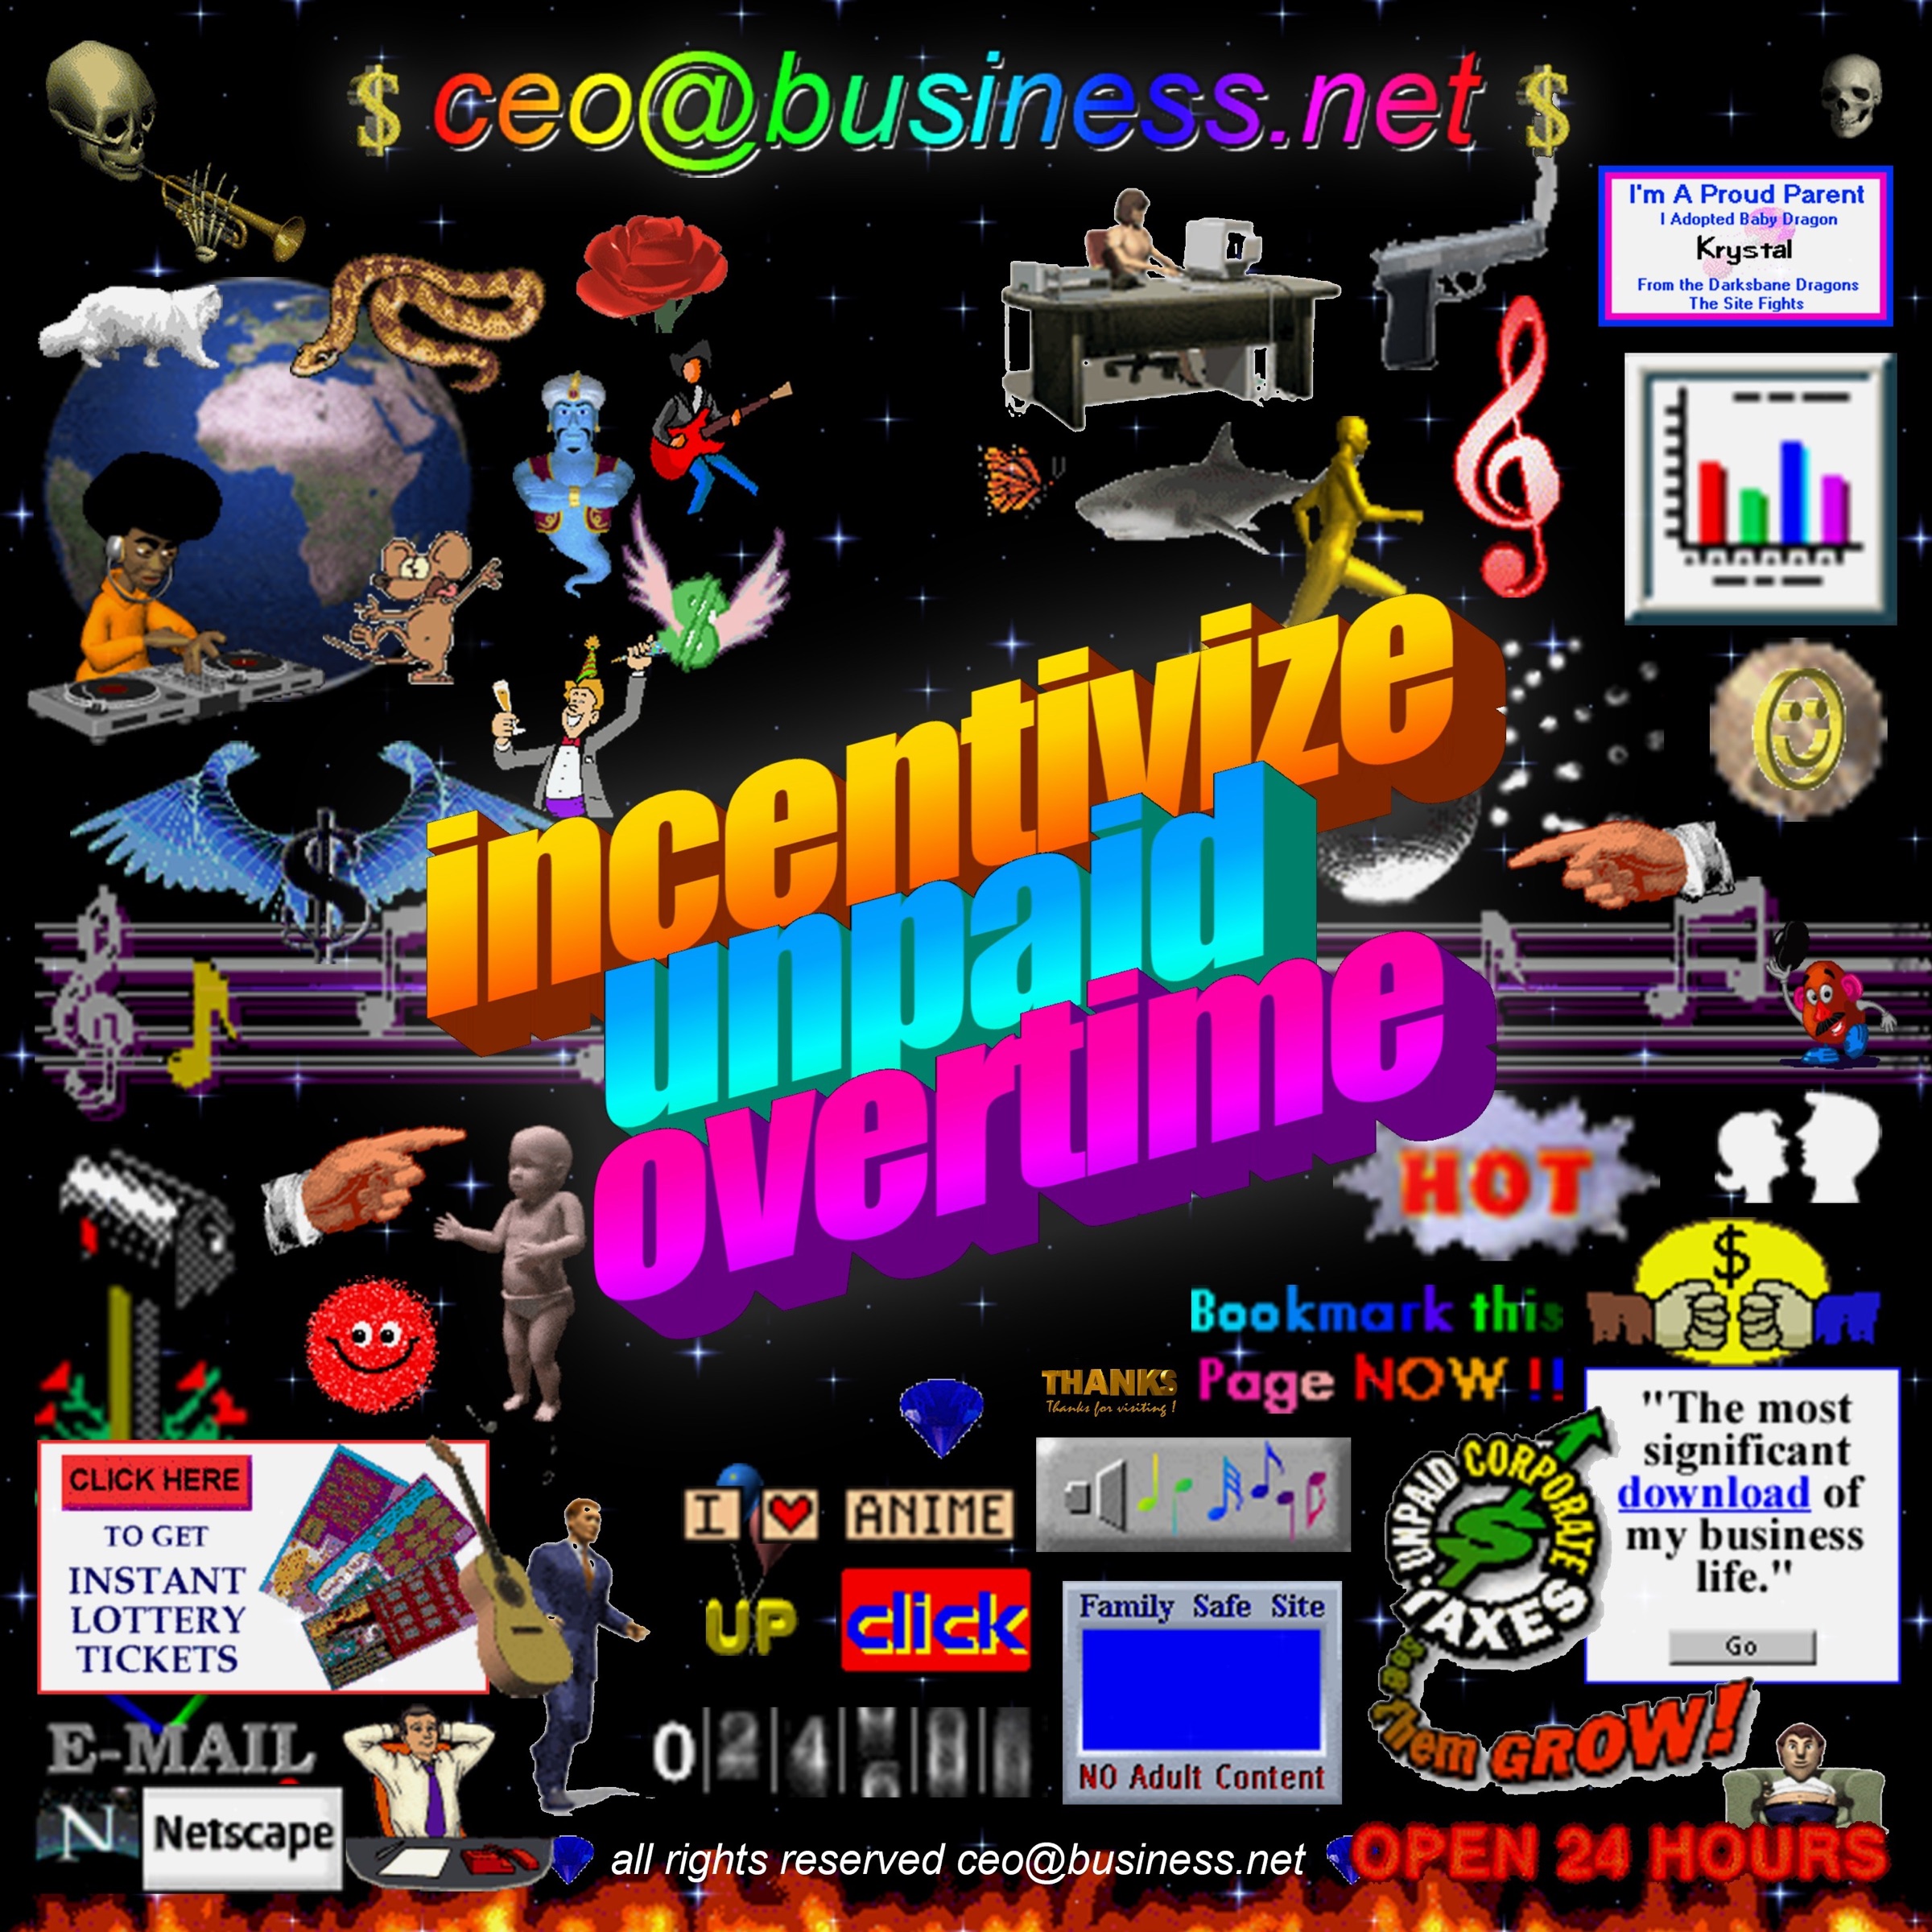 ceo@business.net, Lentra, & Crosby — blah blah blah cover artwork